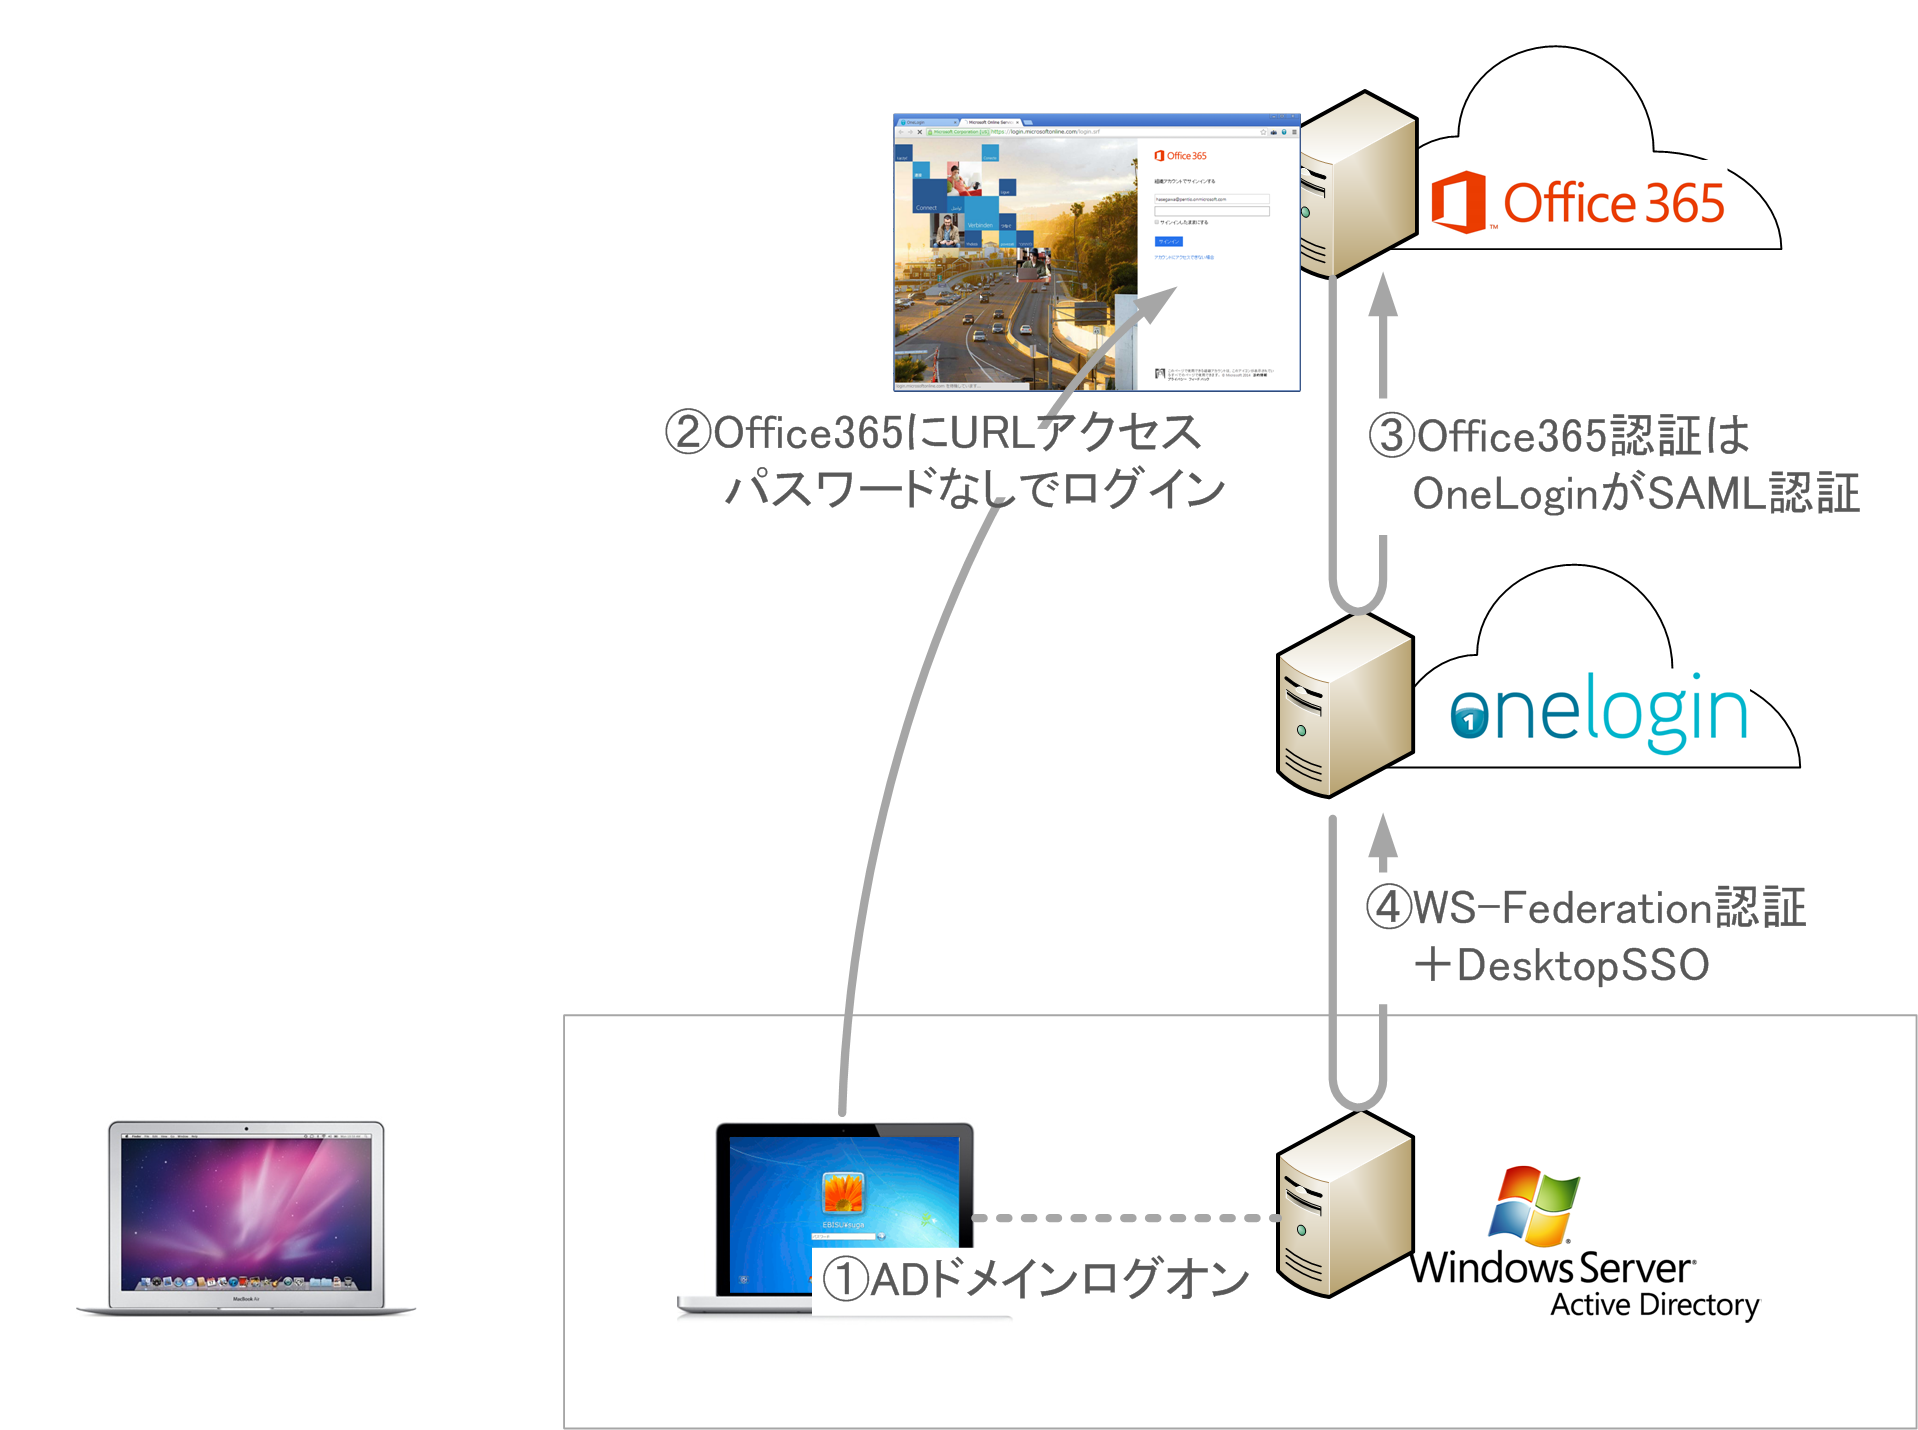 ペンティオ、クラウドSSOサービス OneLoginでActive Directory連携を提供開始  ～パスワードなしでドメイン参加PCからクラウドサービスへログイン可能に～｜ペンティオ株式会社のプレスリリース